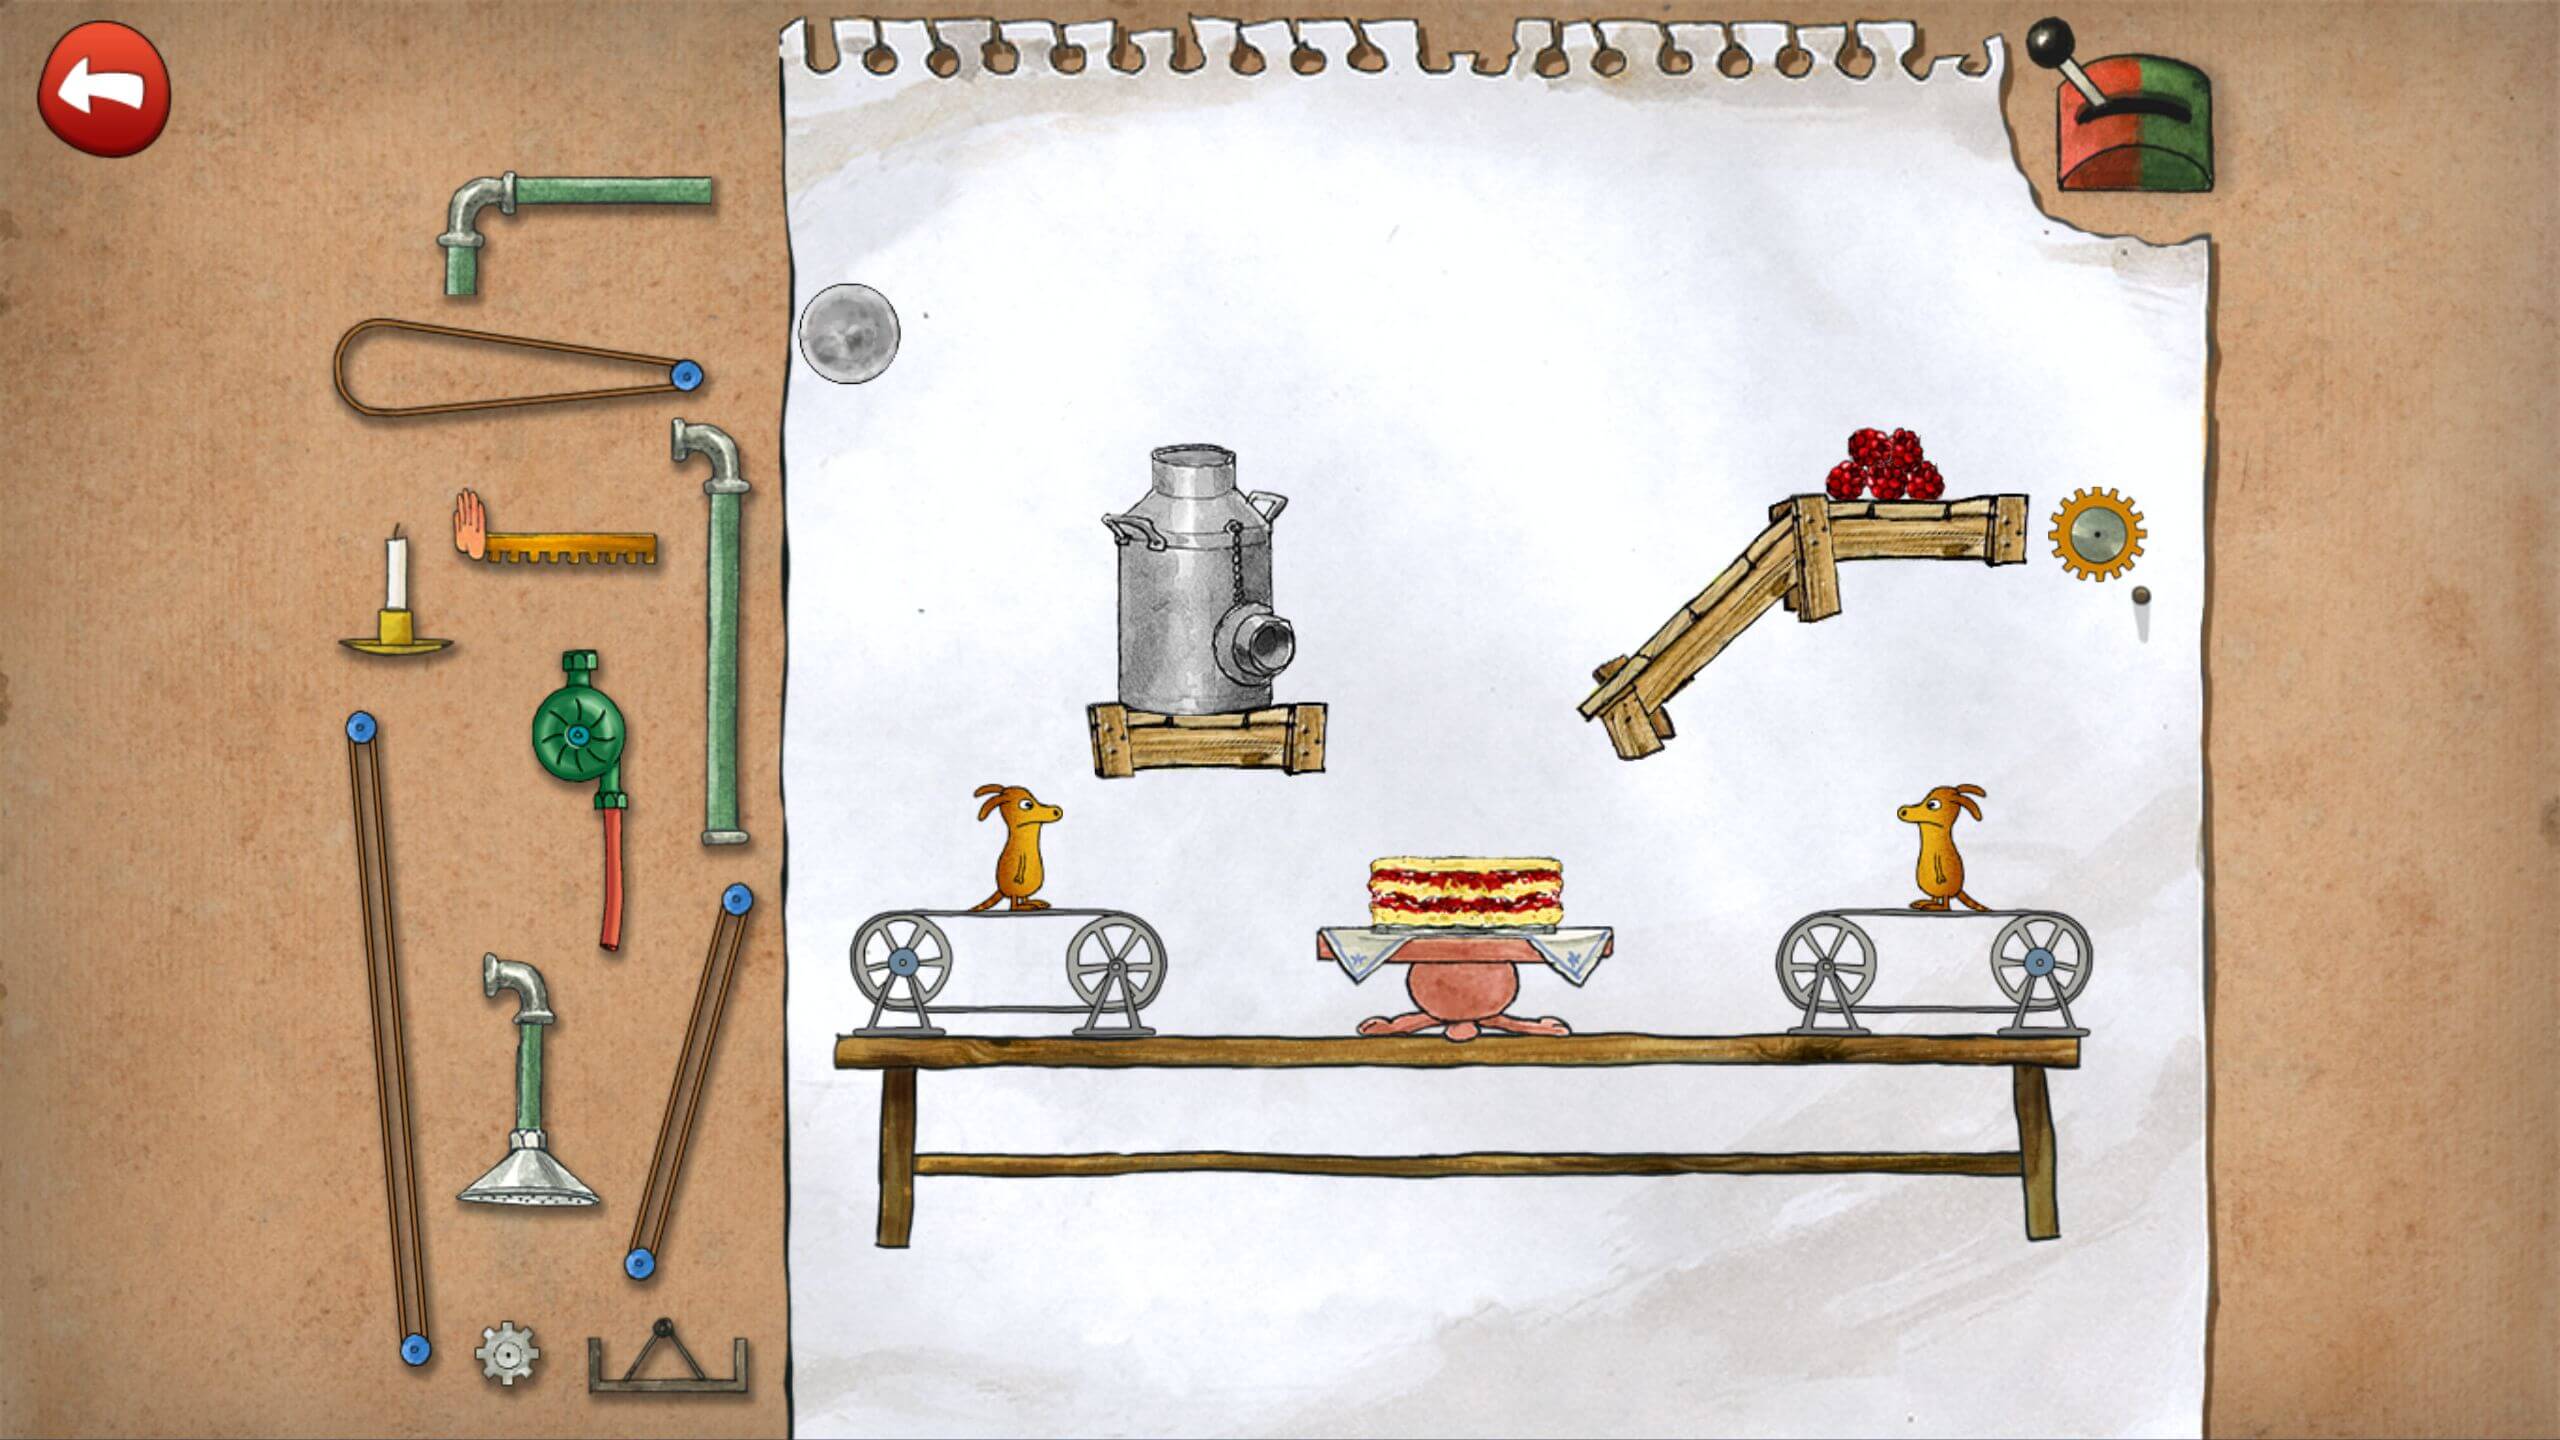 Pettson’s Inventions 2: Dětská logická hra pro Android s roztomilou grafikou